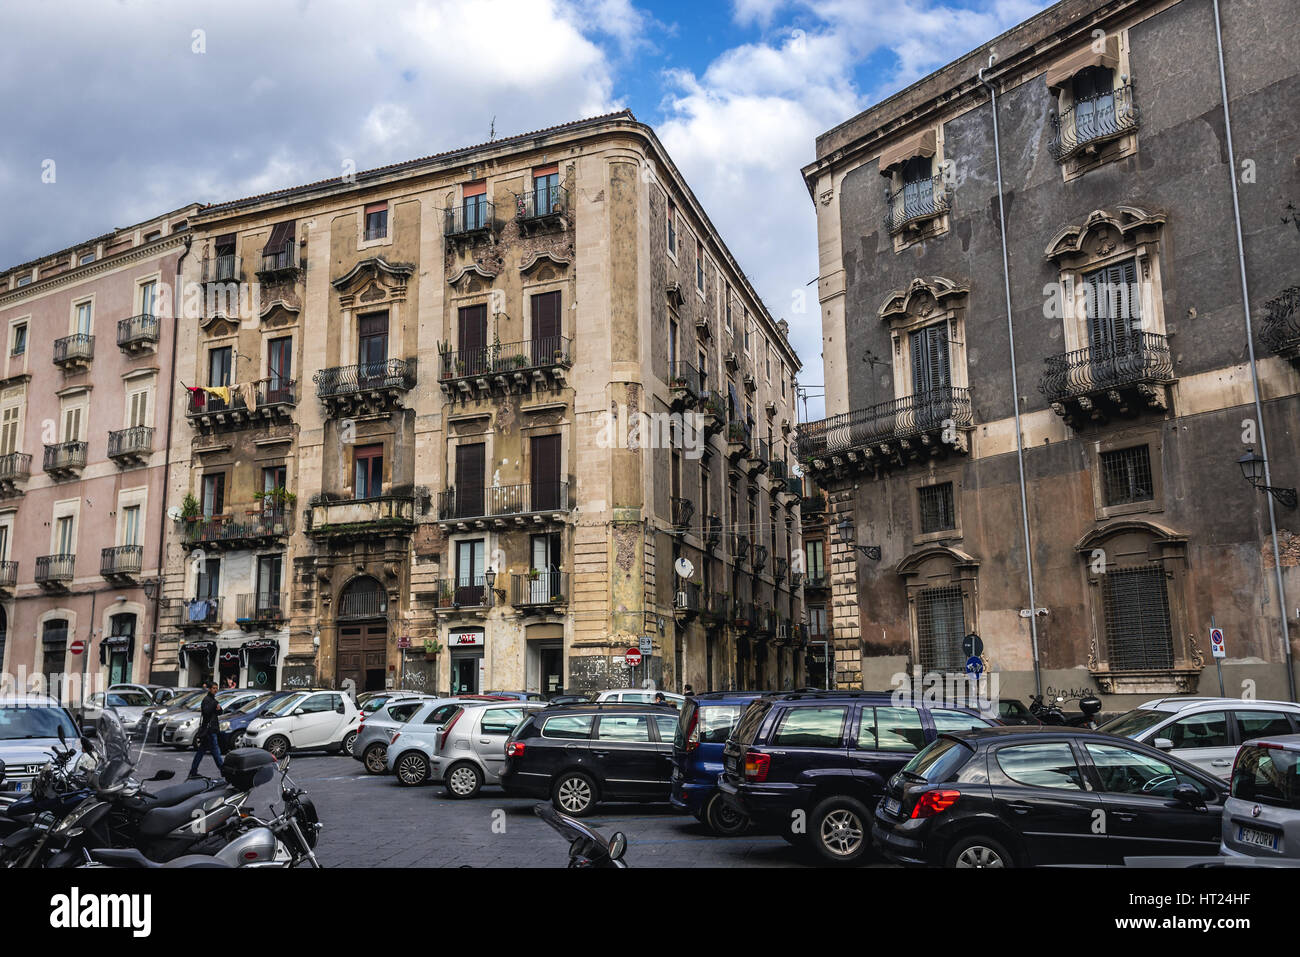 Gebäude in der Stadt Catania auf der Ostseite der Insel Sizilien, Italien. Manganelli Palace auf der rechten Seite Stockfoto